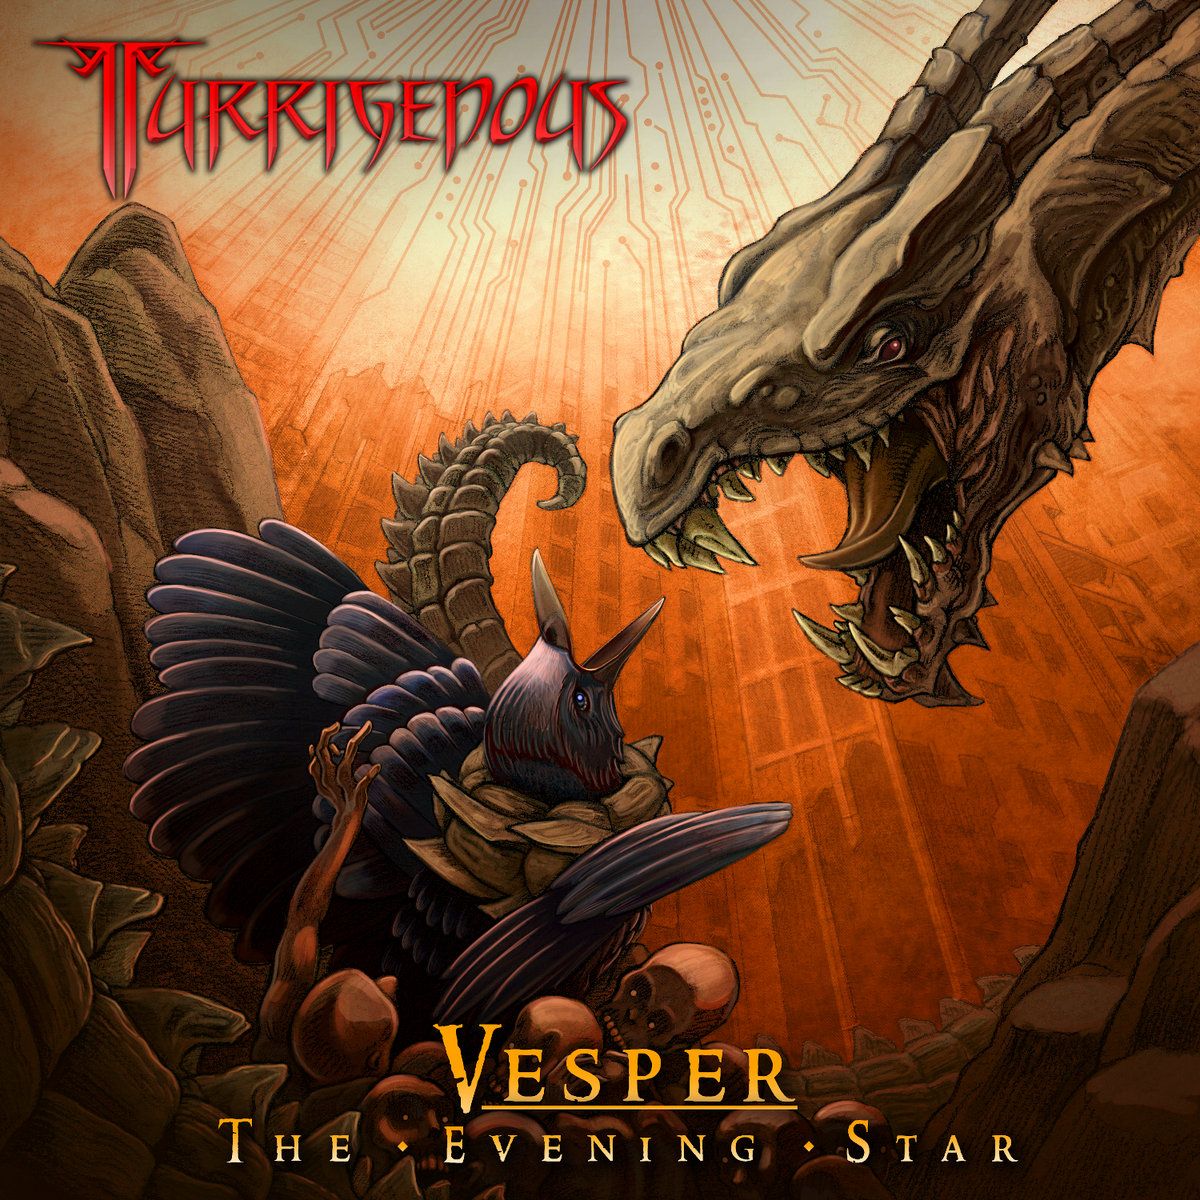 Turrigenous - Vesper The Evening Star